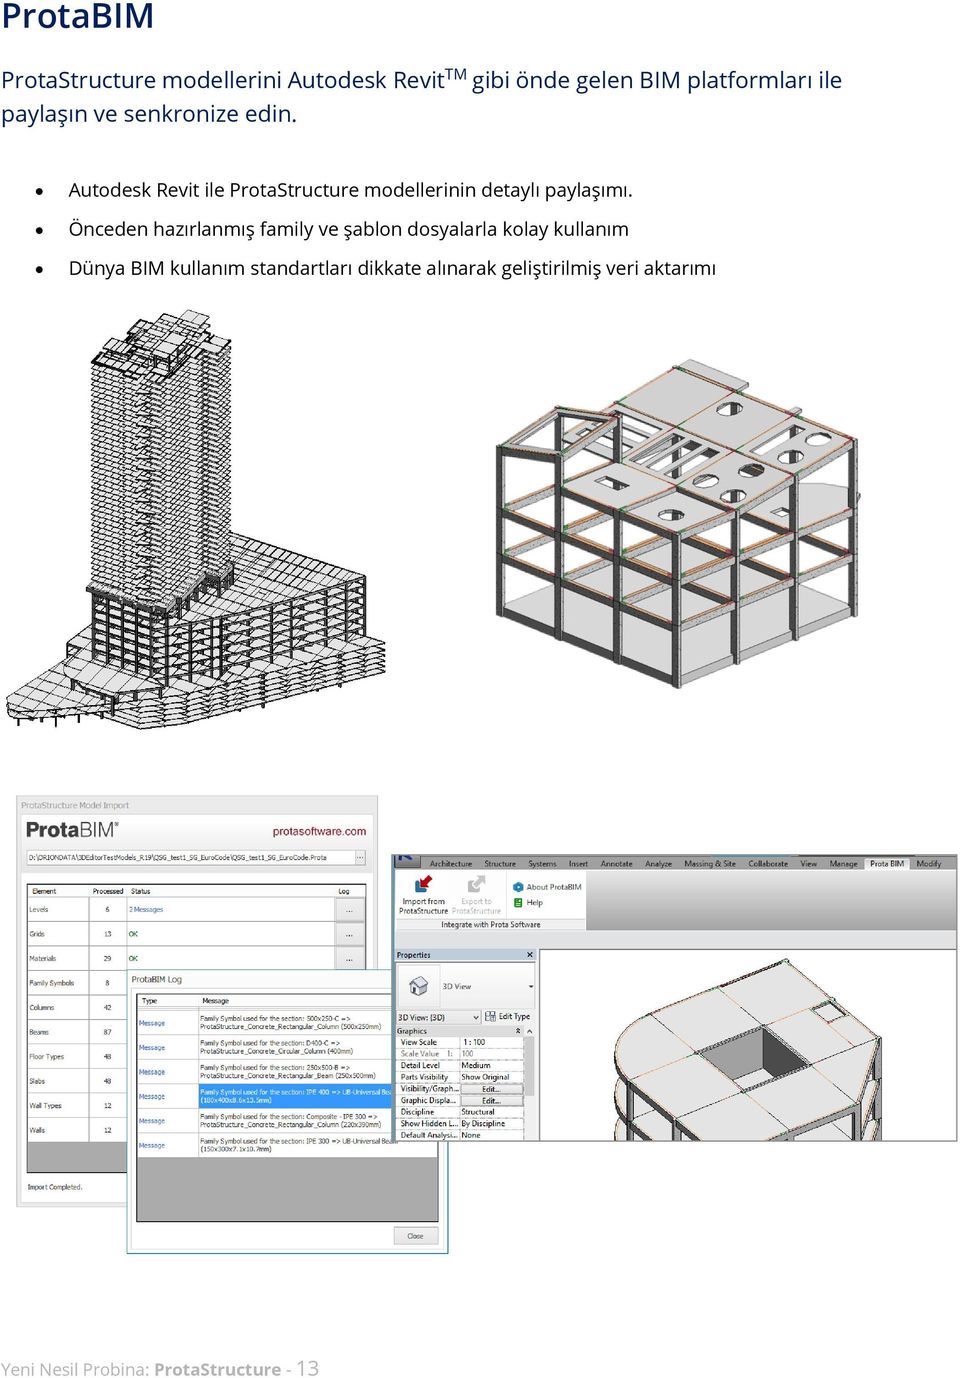 Autodesk Revit ile ProtaStructure modellerinin detaylı paylaşımı.